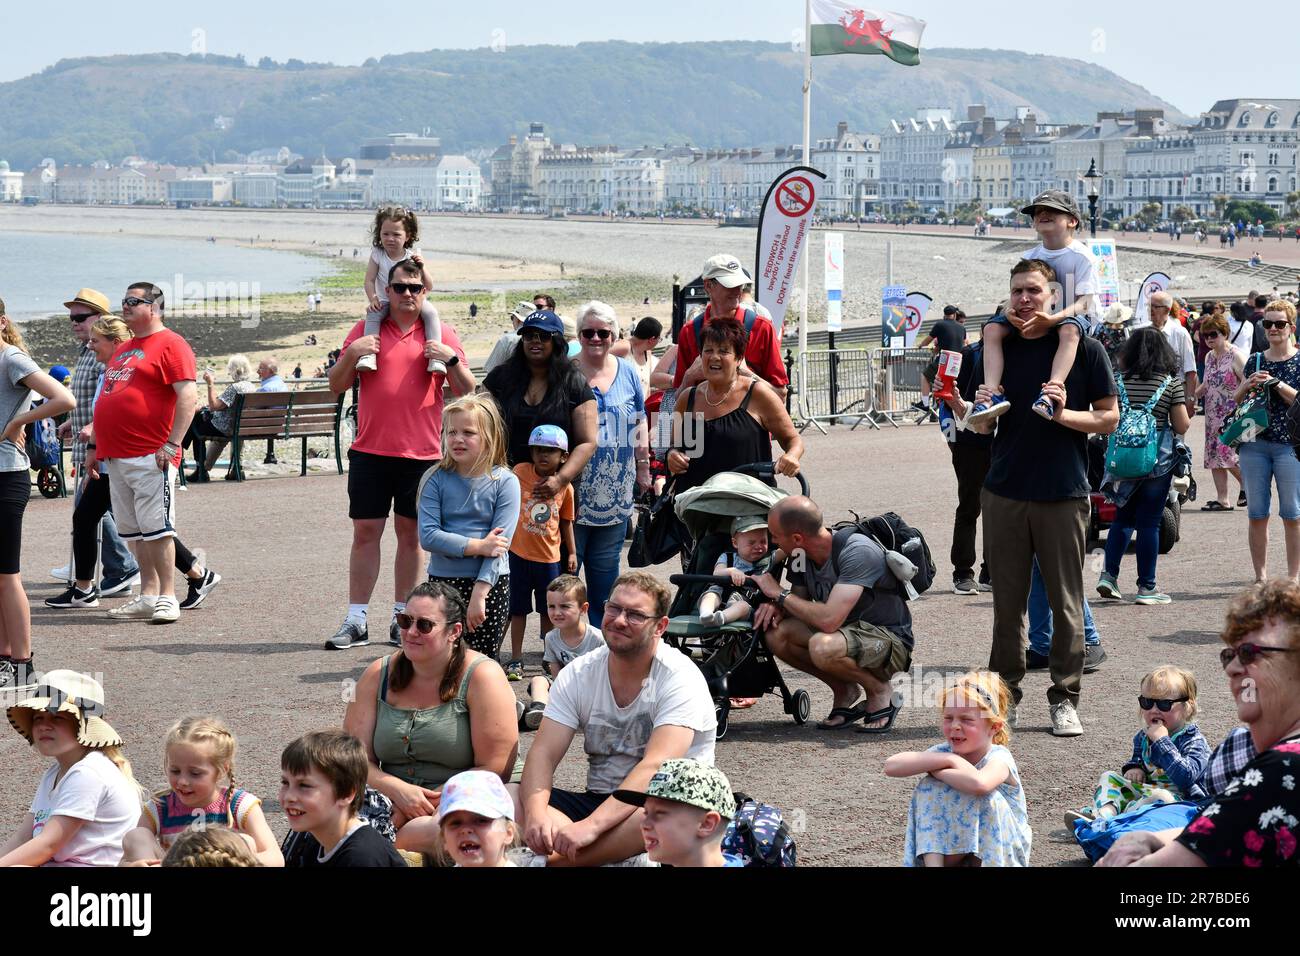 Familien und Kinder sehen Professor Codmans traditionelle Punch- und Judy-Show auf der Llandudno Promenade. Wales Uk Stockfoto